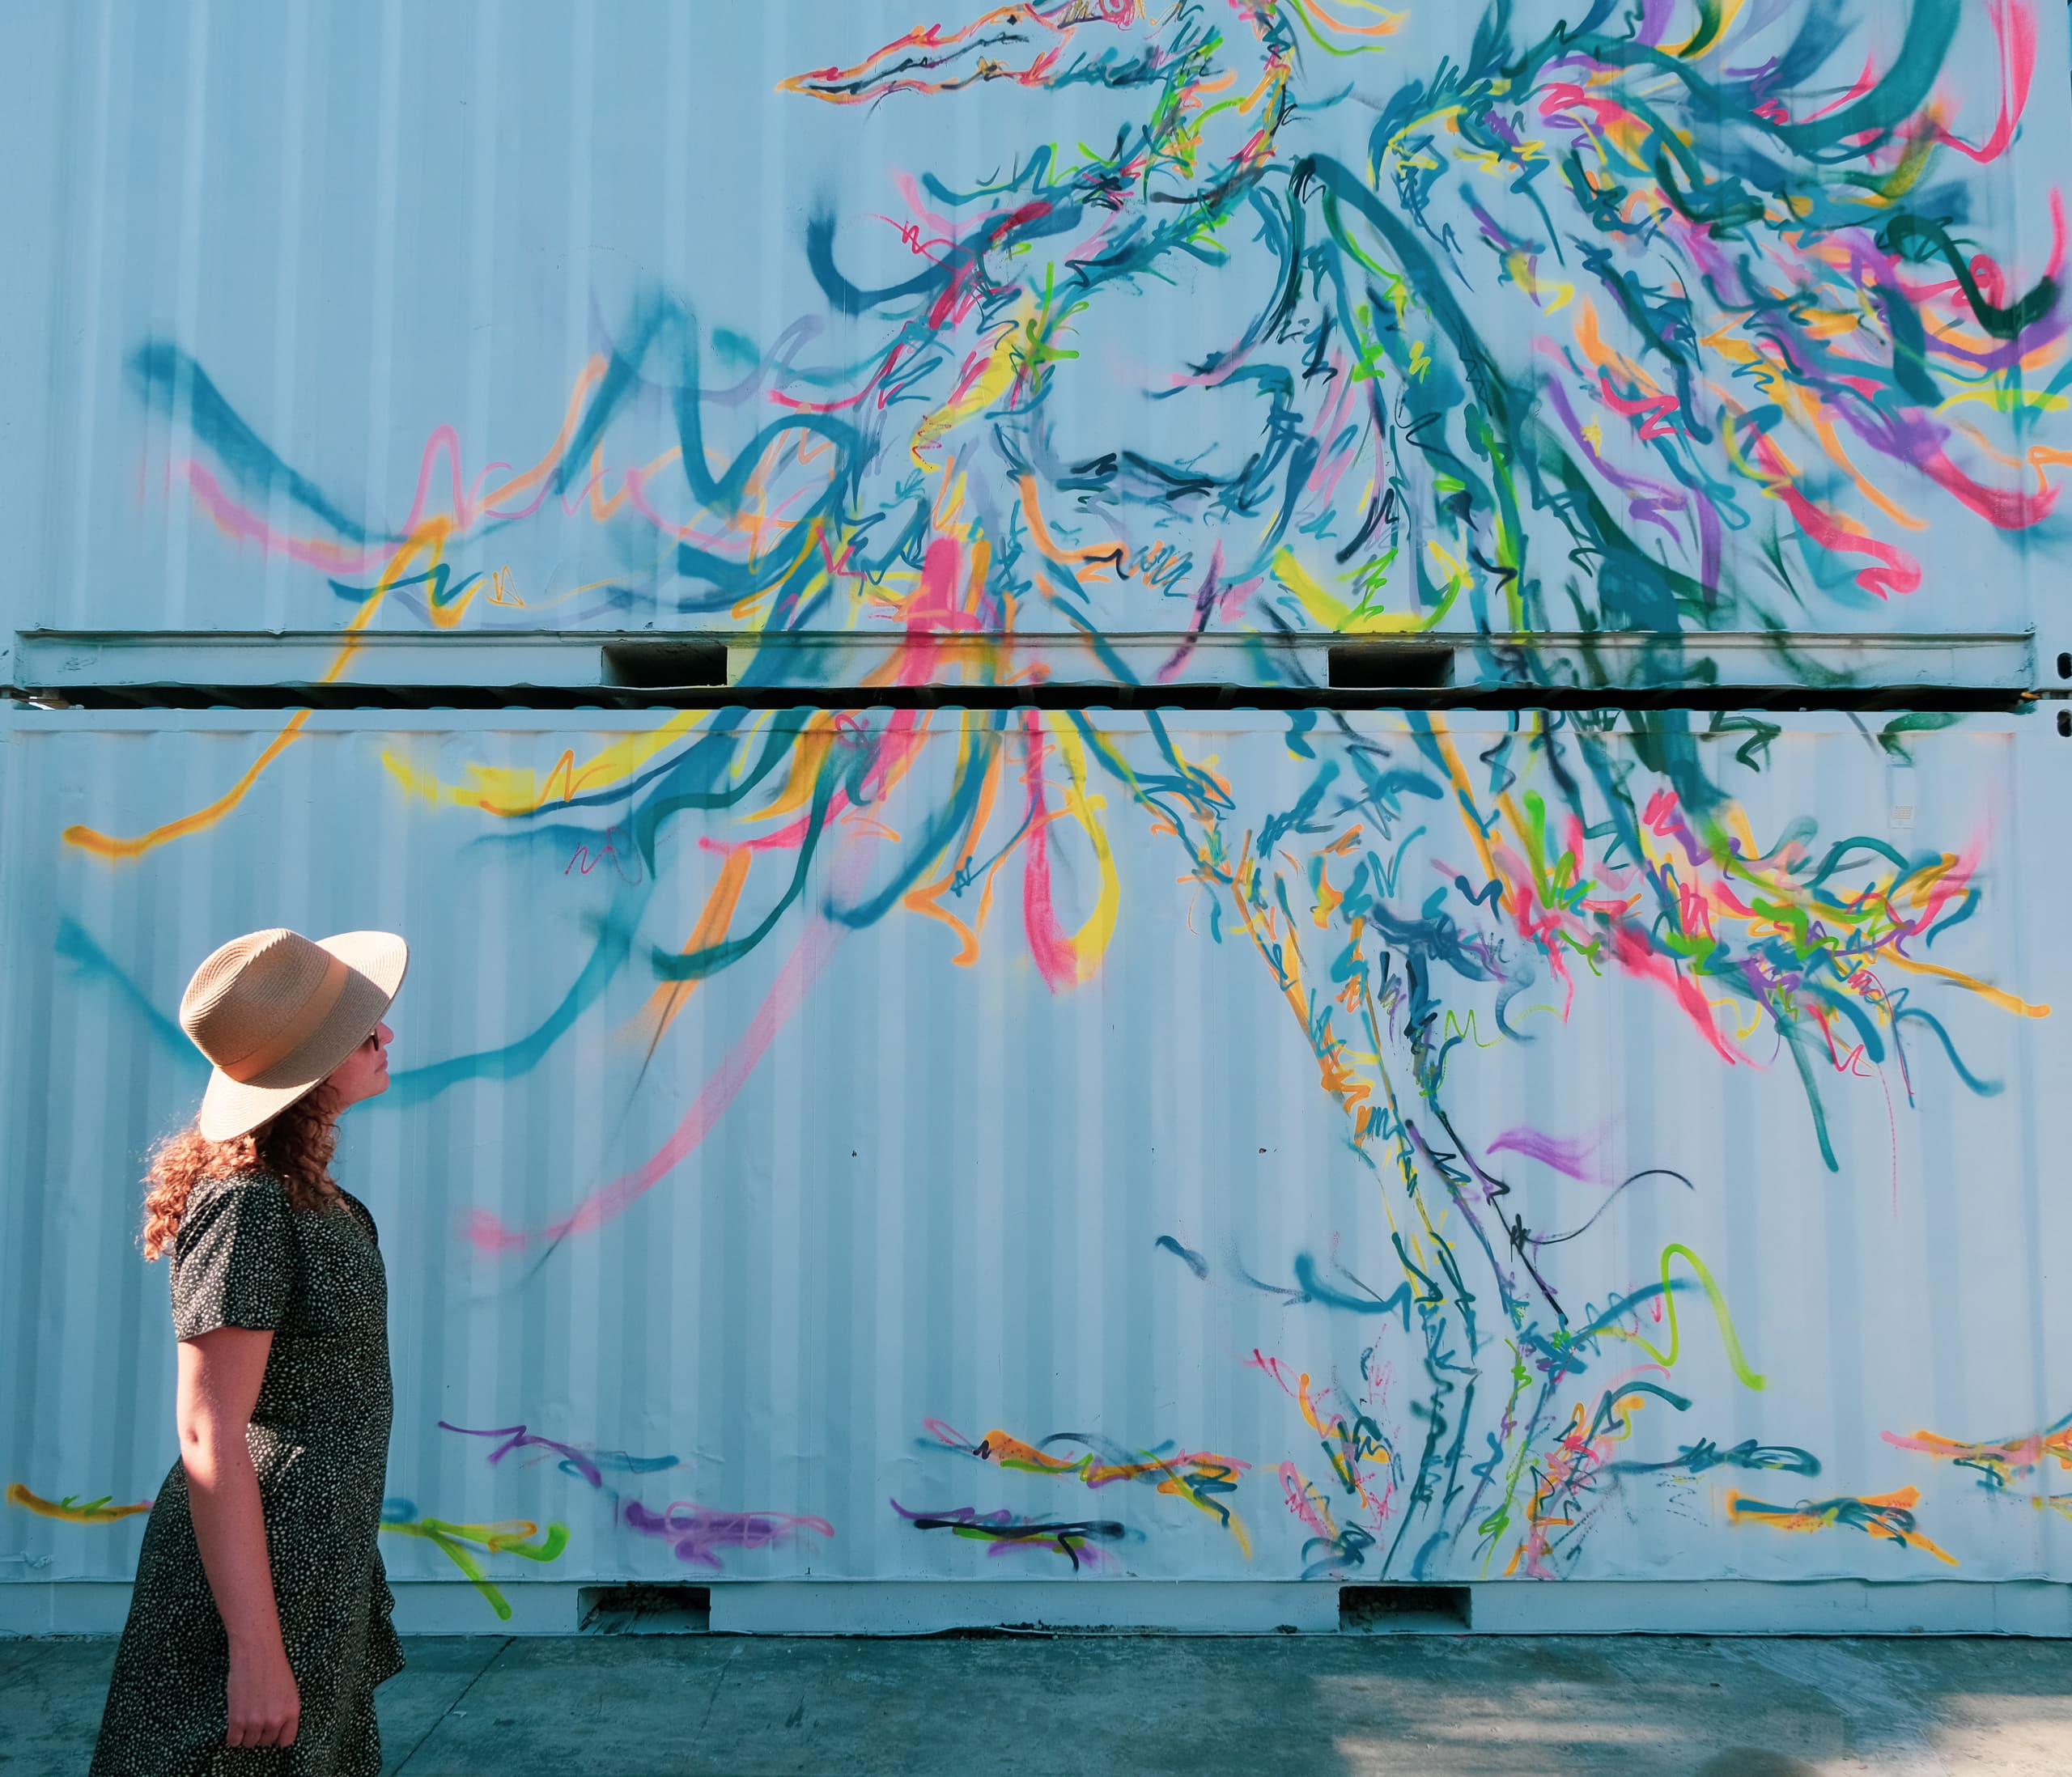 Malou bewondert een kunstwerk op een zeecontainer in de wijk Wynwood, Miami